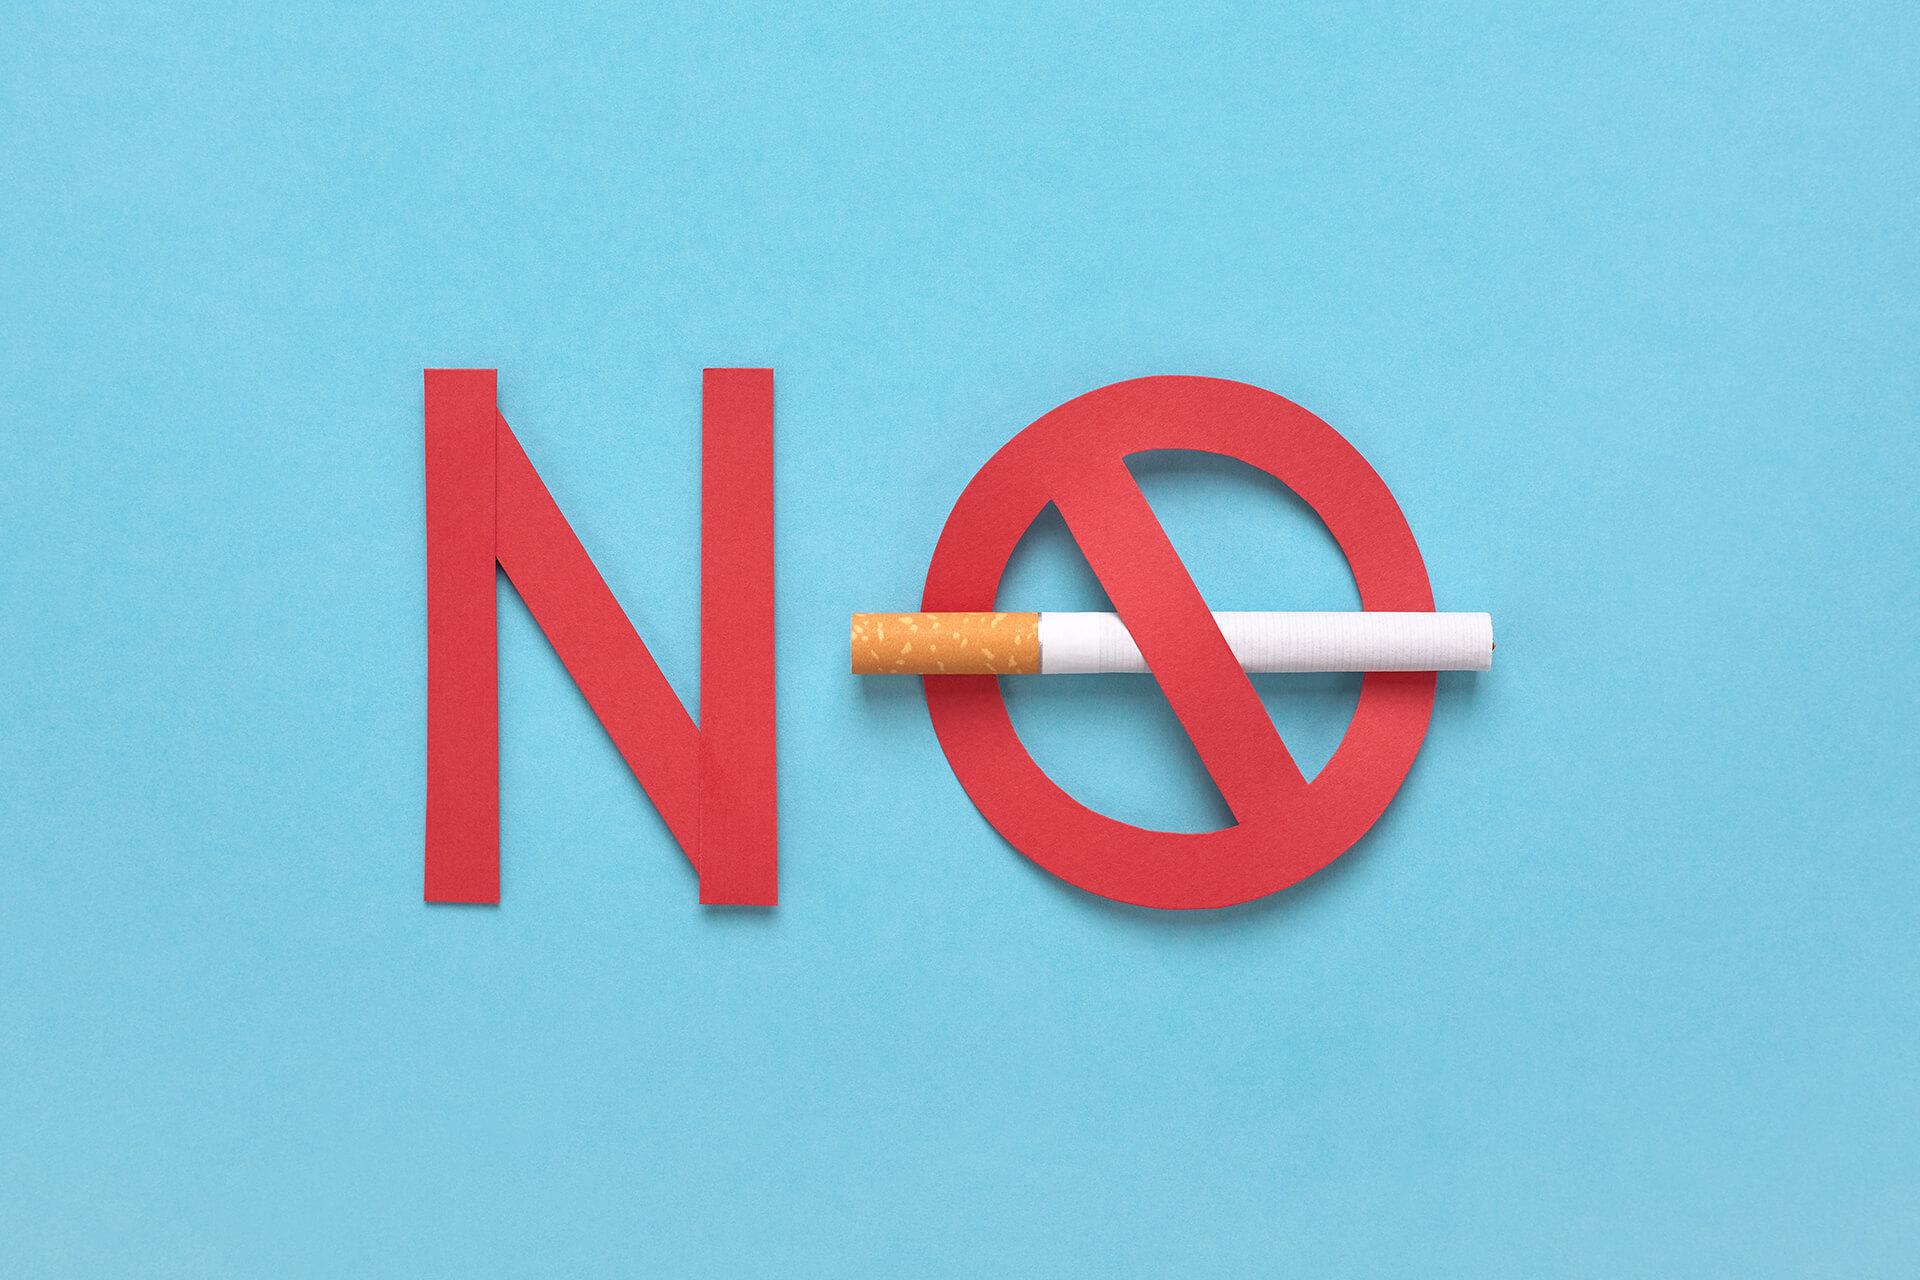 धूम्रपान बंद करण्याचा दिवस: धूम्रपान थांबवण्यासाठी 6 उपयुक्त टिप्स